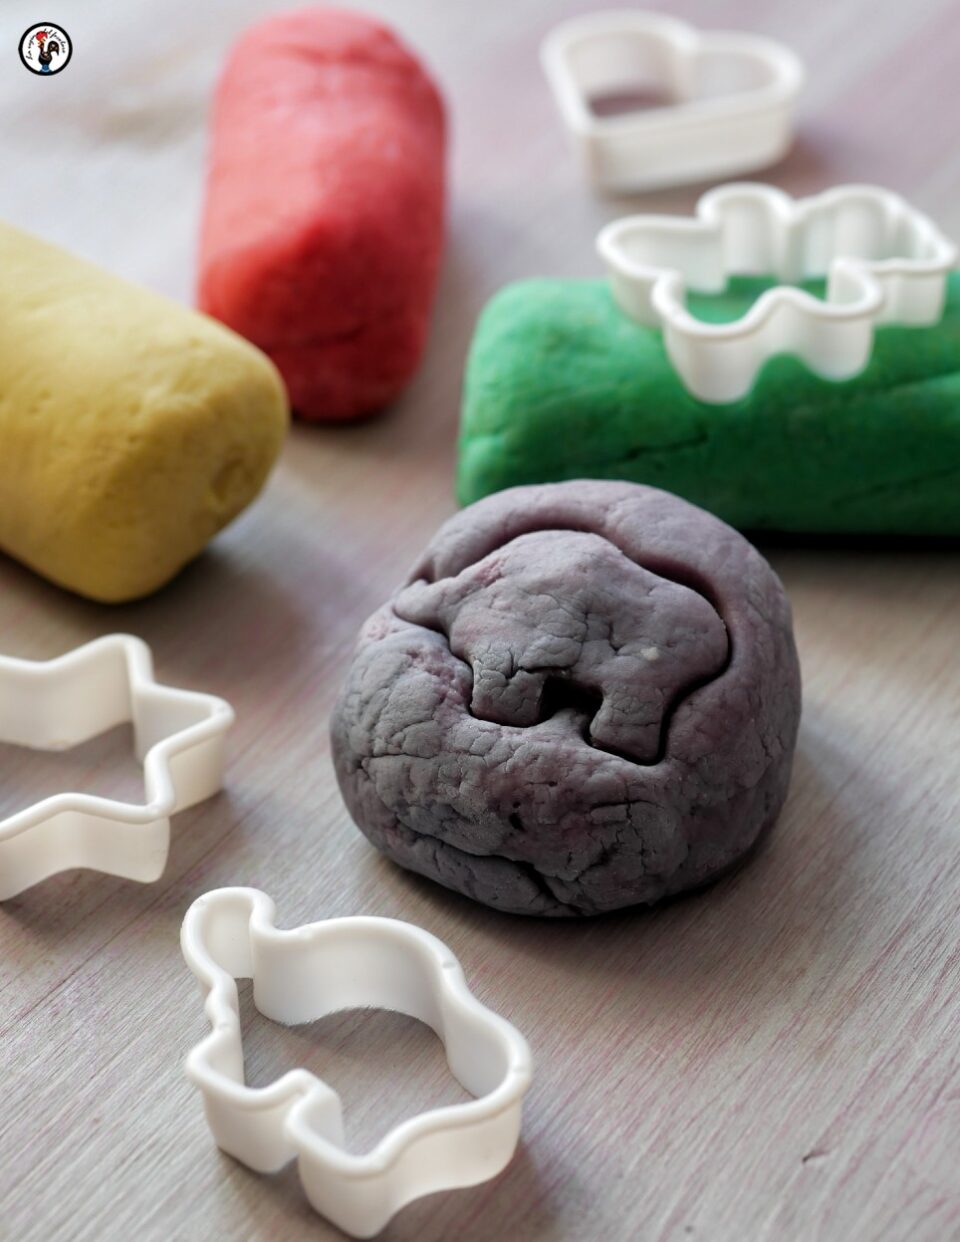 La ricetta del playfoam, la pasta modellabile per bambini